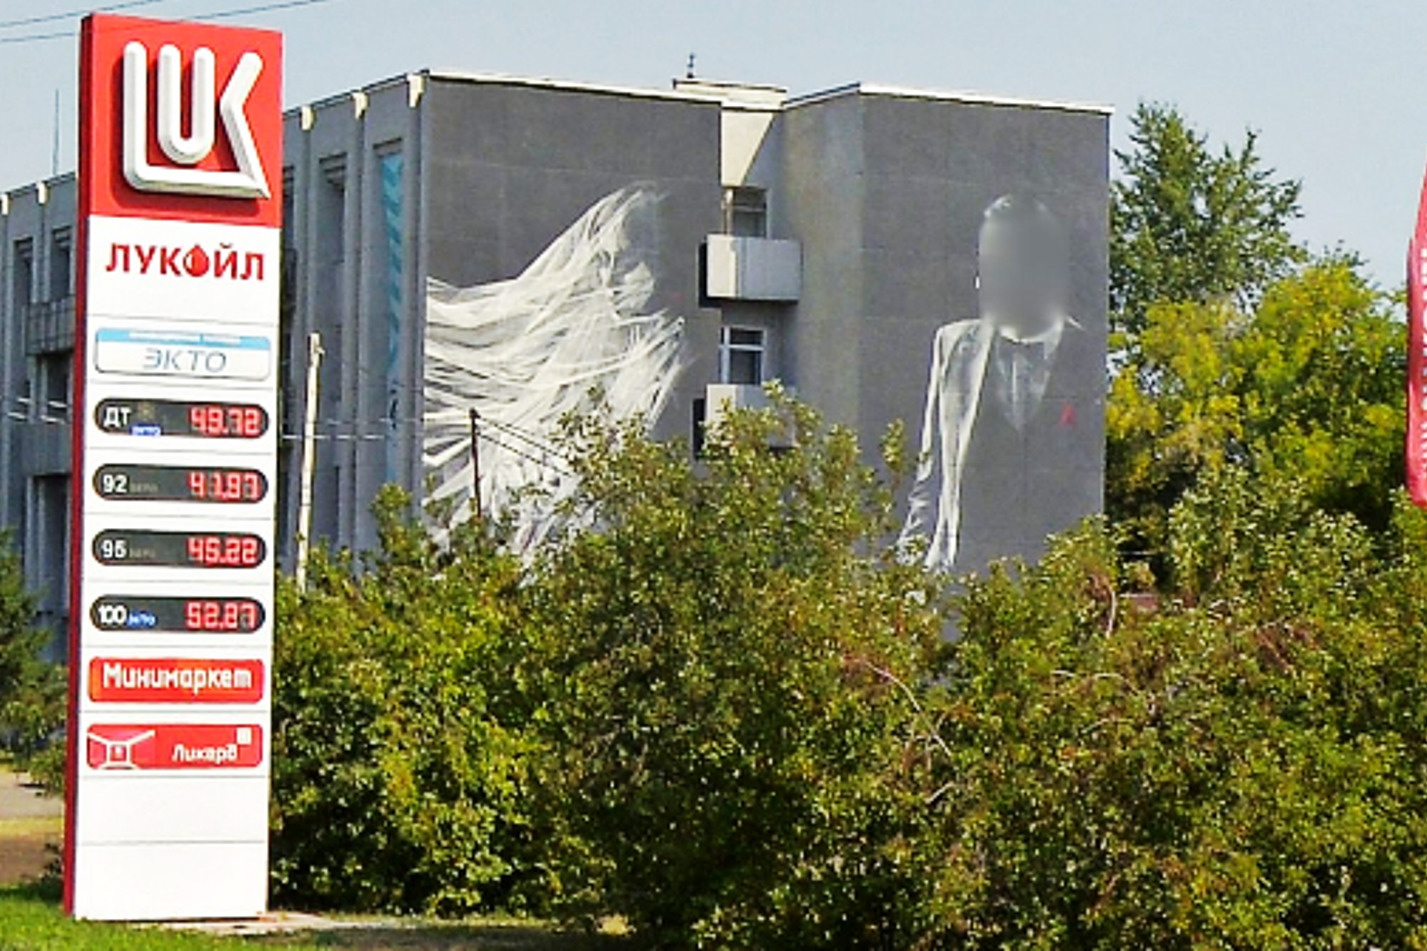 «Яндекс.Панорамы» заботливо замазали лицо изображению жениха на граффити, но цены на бензин так легко из памяти не стереть